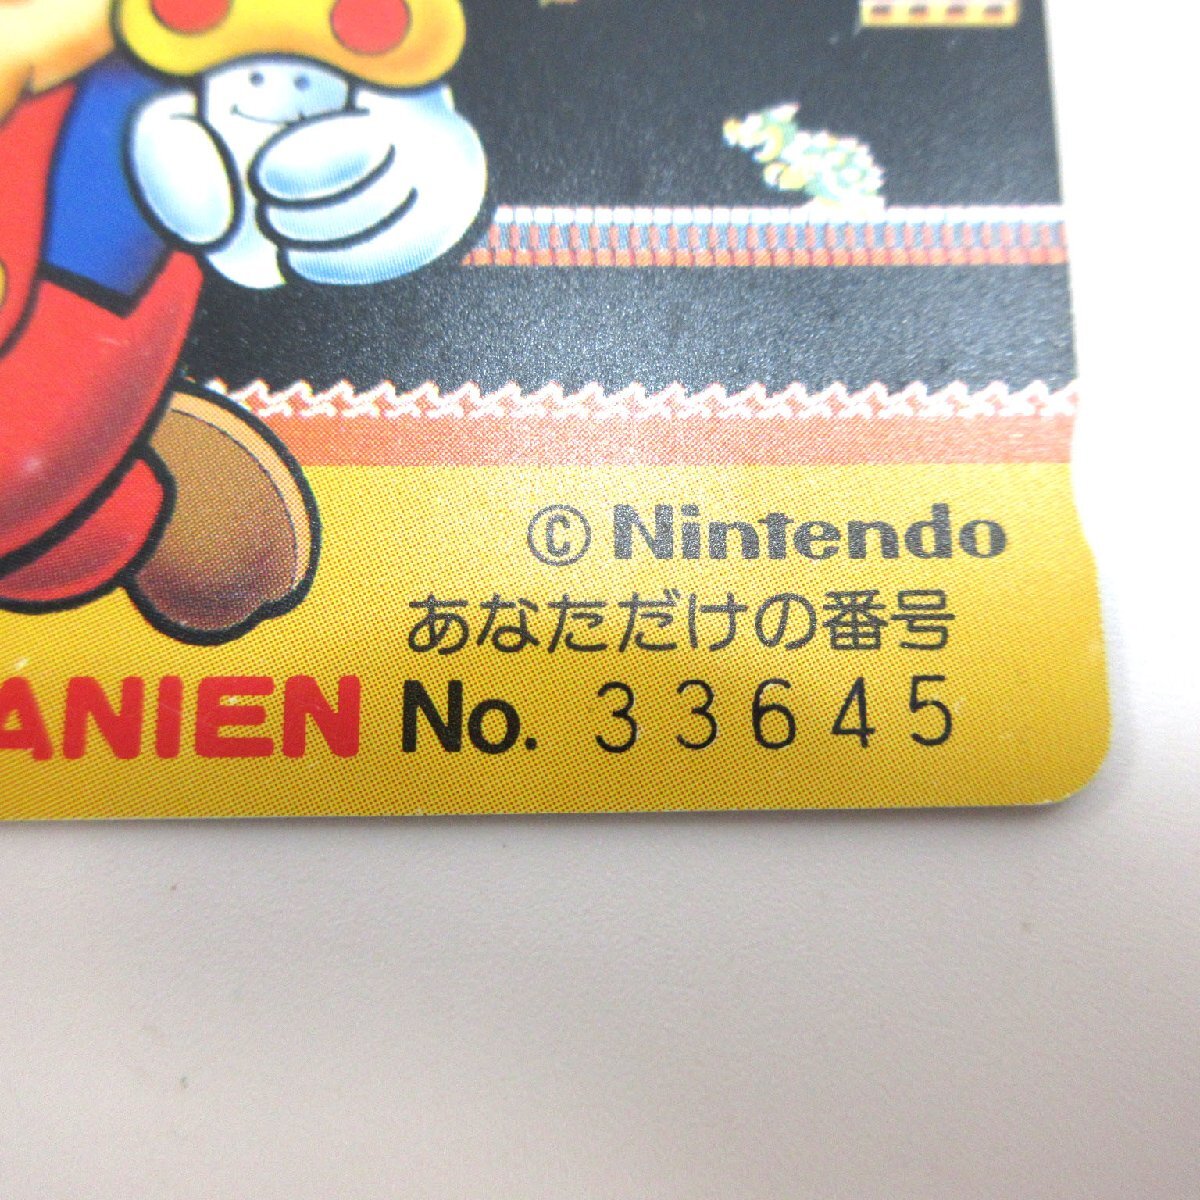  хранение товар nintendo Mario иллюстрации телефонная карточка 50 частотность No.33645 телефонная карточка б/у бесплатная доставка *